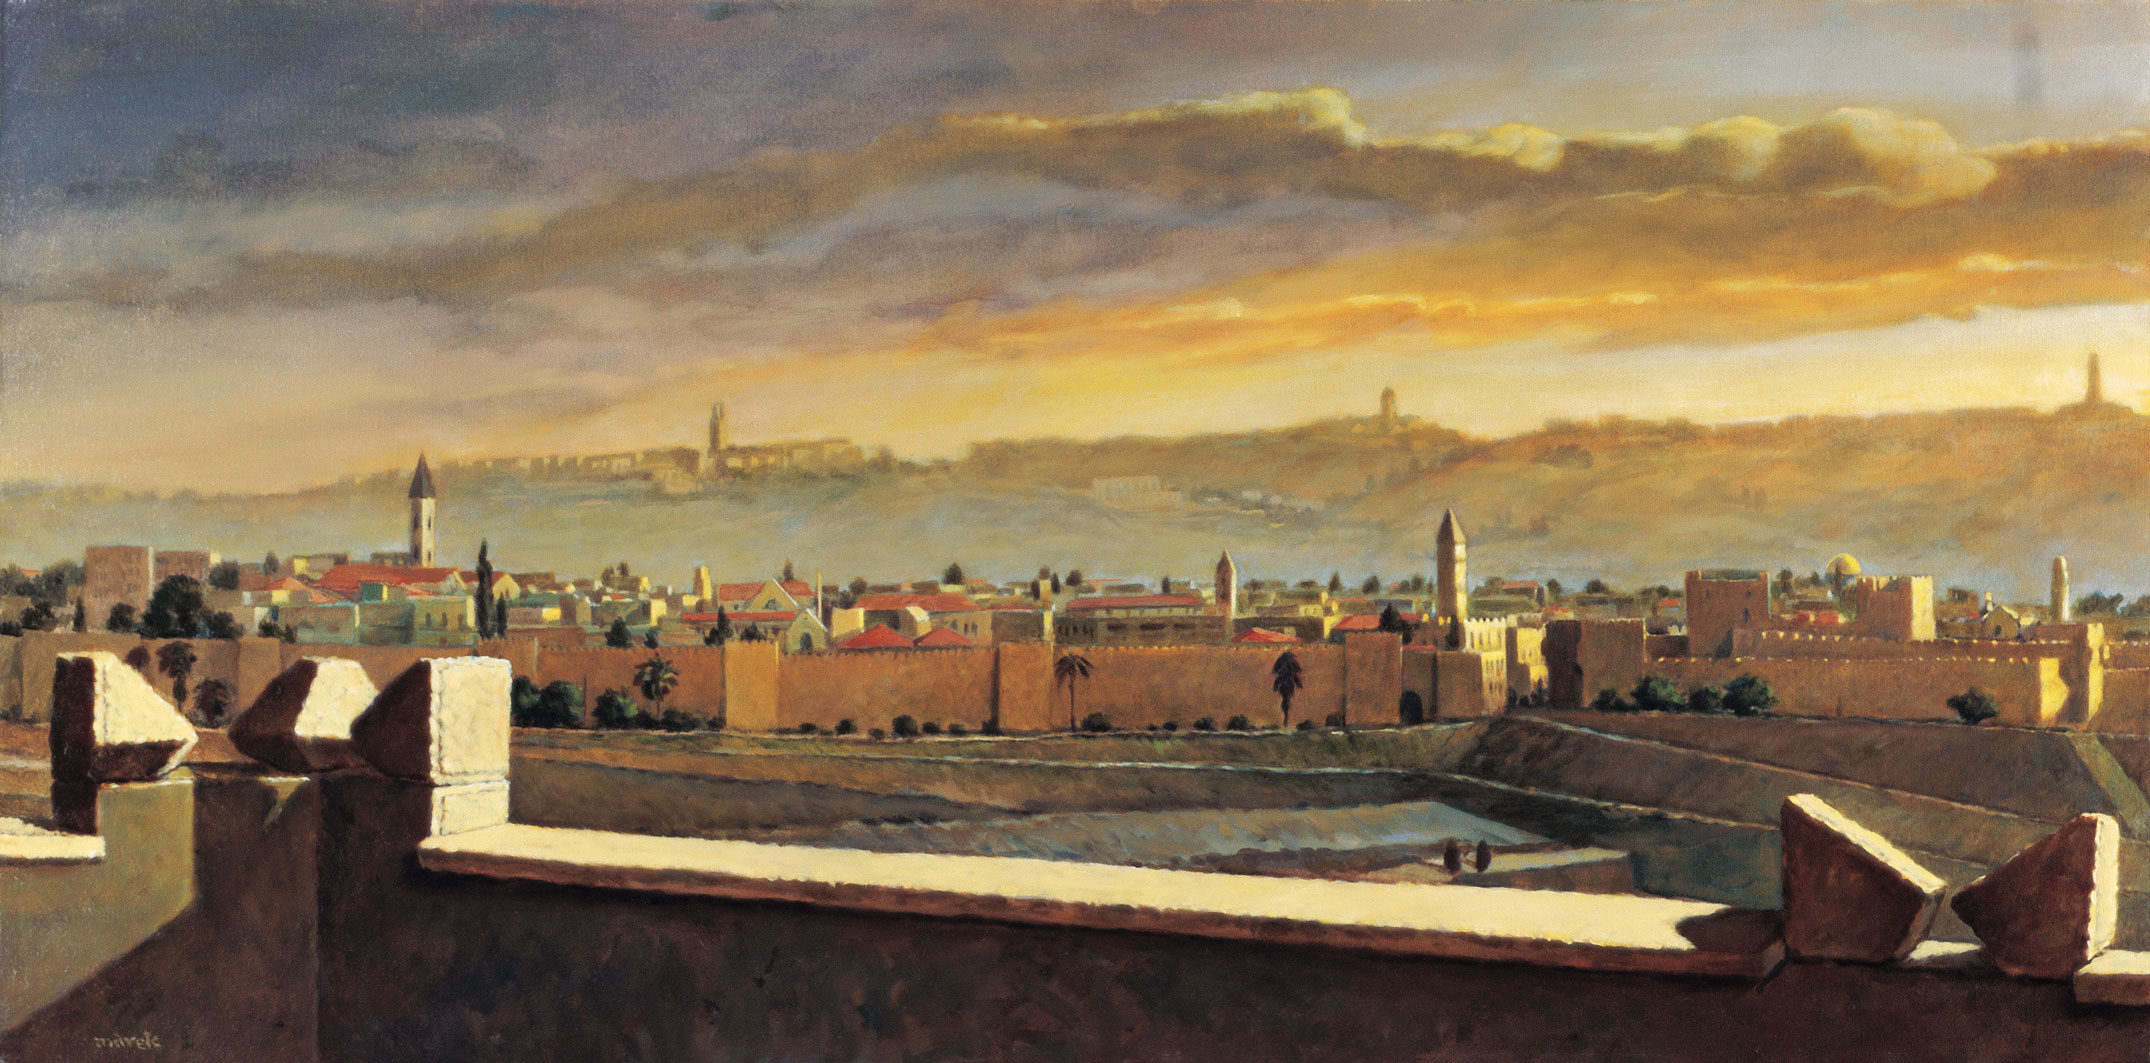 מארק ינאי - העיר העתיקה, מבט ממלון קינג דיוויד